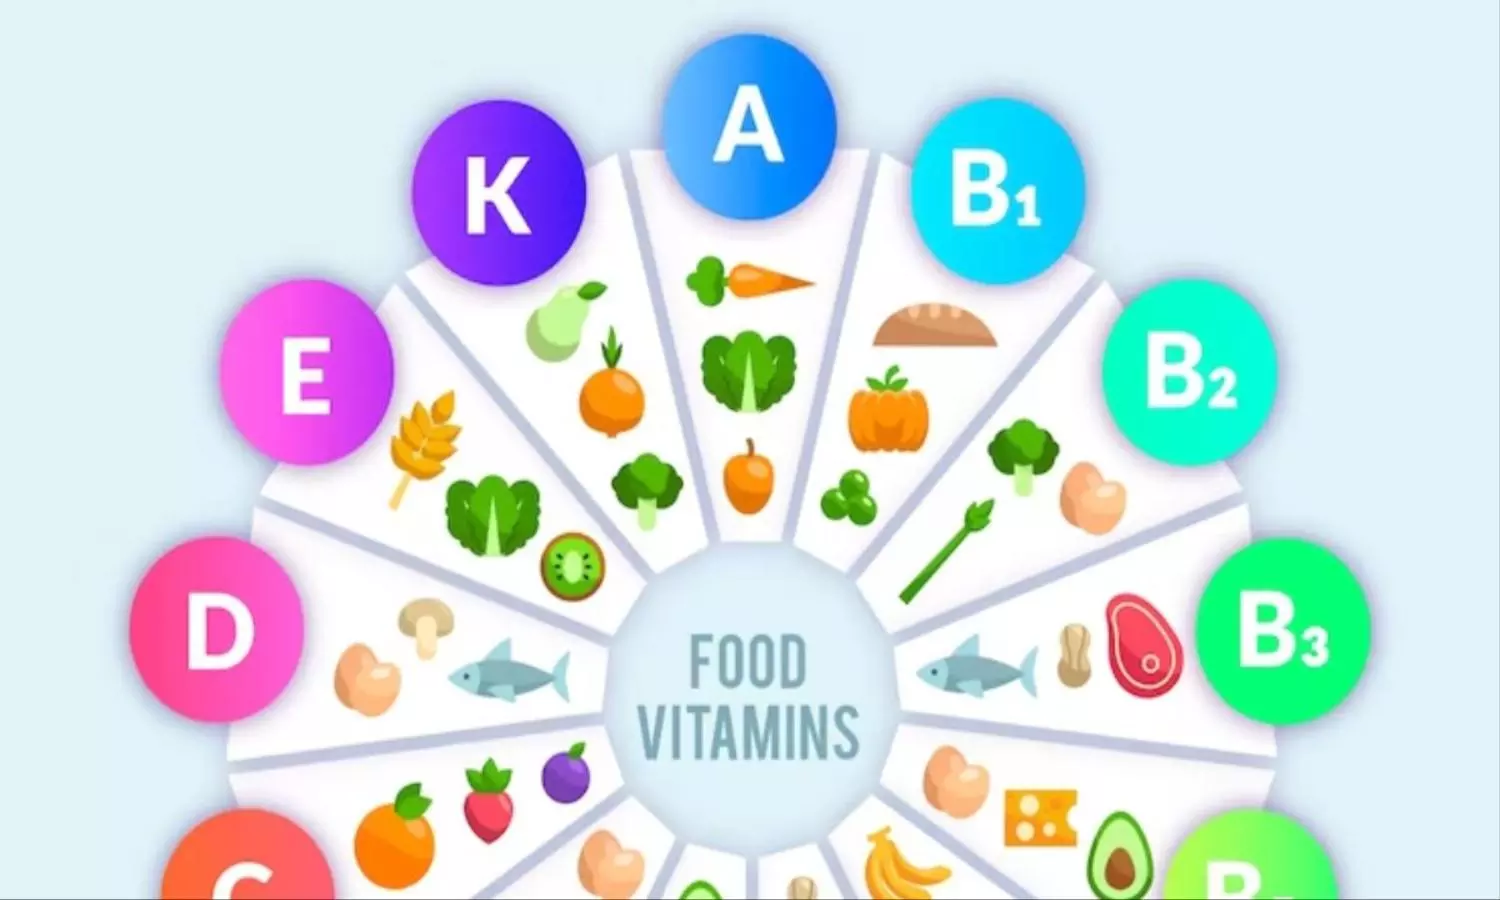 Essential Vitamins: शरीर को रोज होती है इन विटामिन्स की जरूरत, अपनी डाइट में जरूर करें शामिल